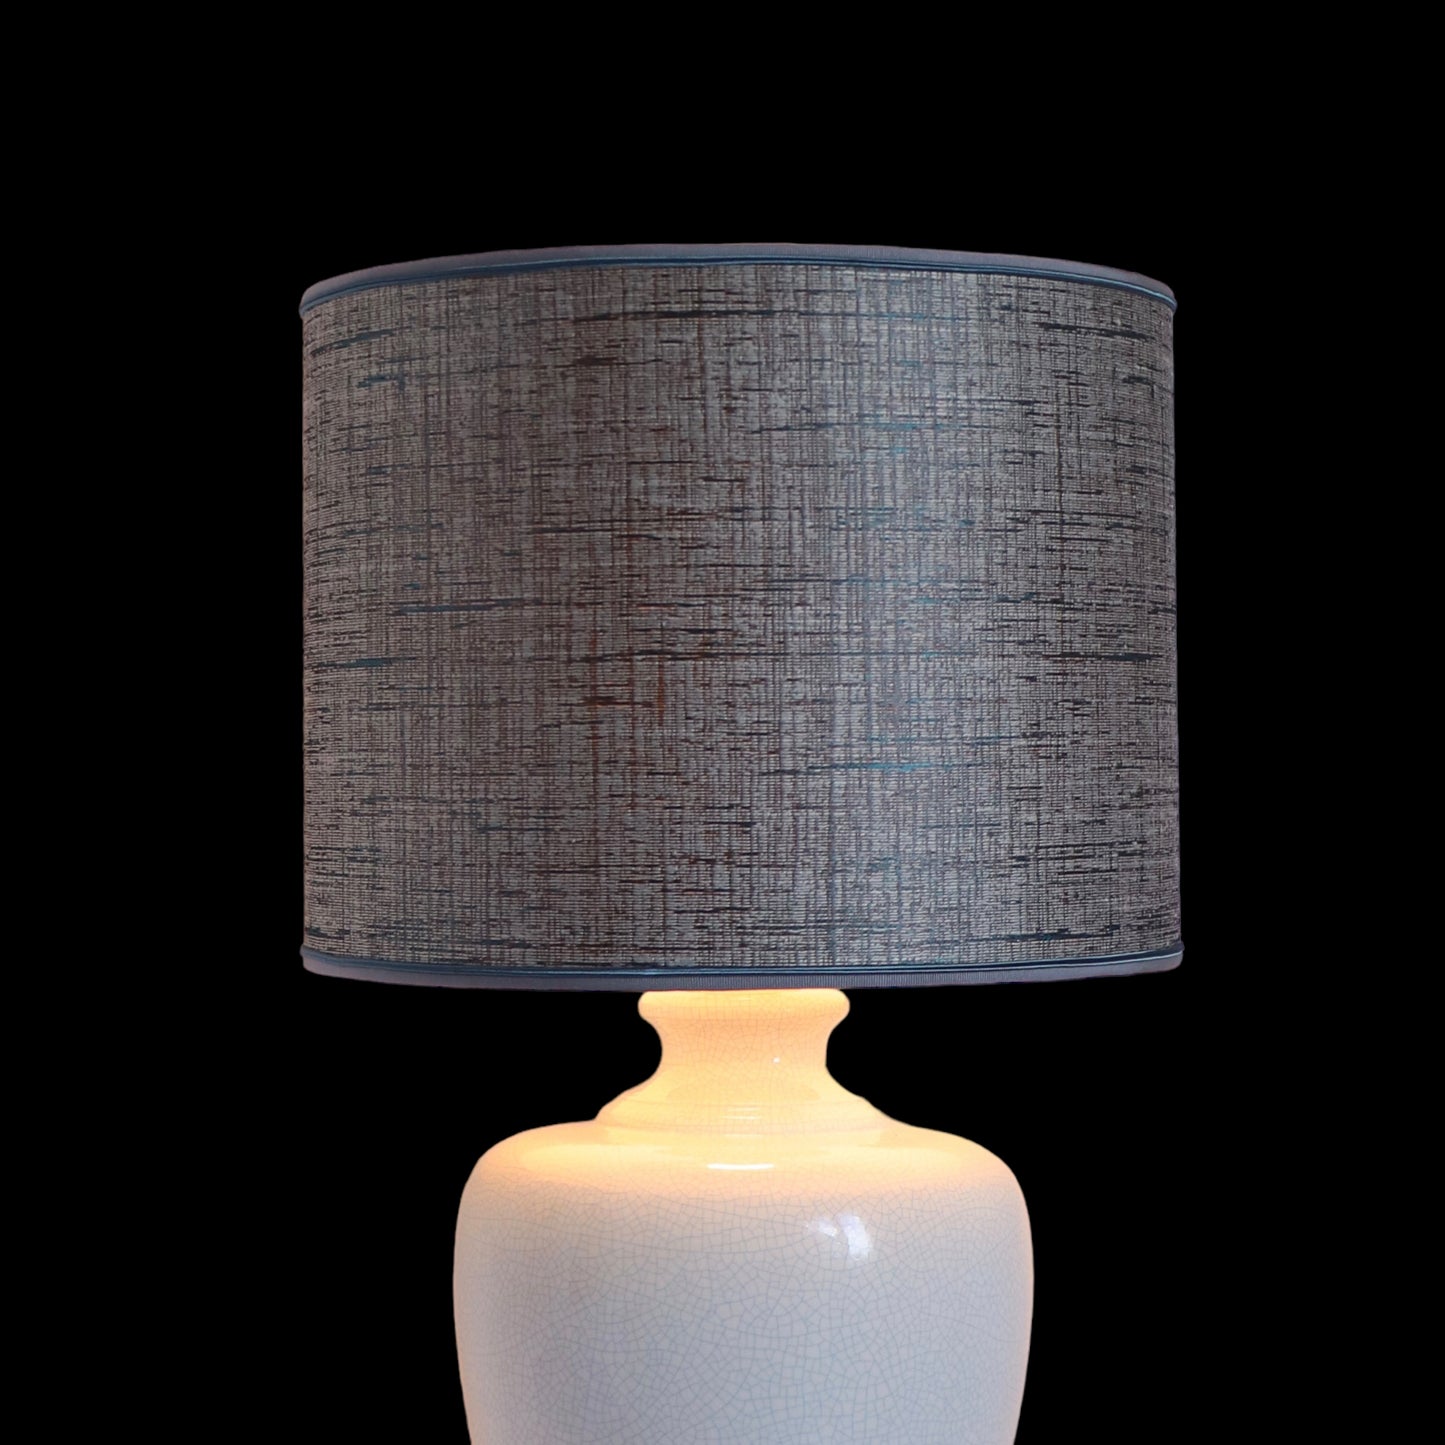 Lampe vintage en céramique craquelé avec un abat-jour en tissu, couleur blanc-bleu